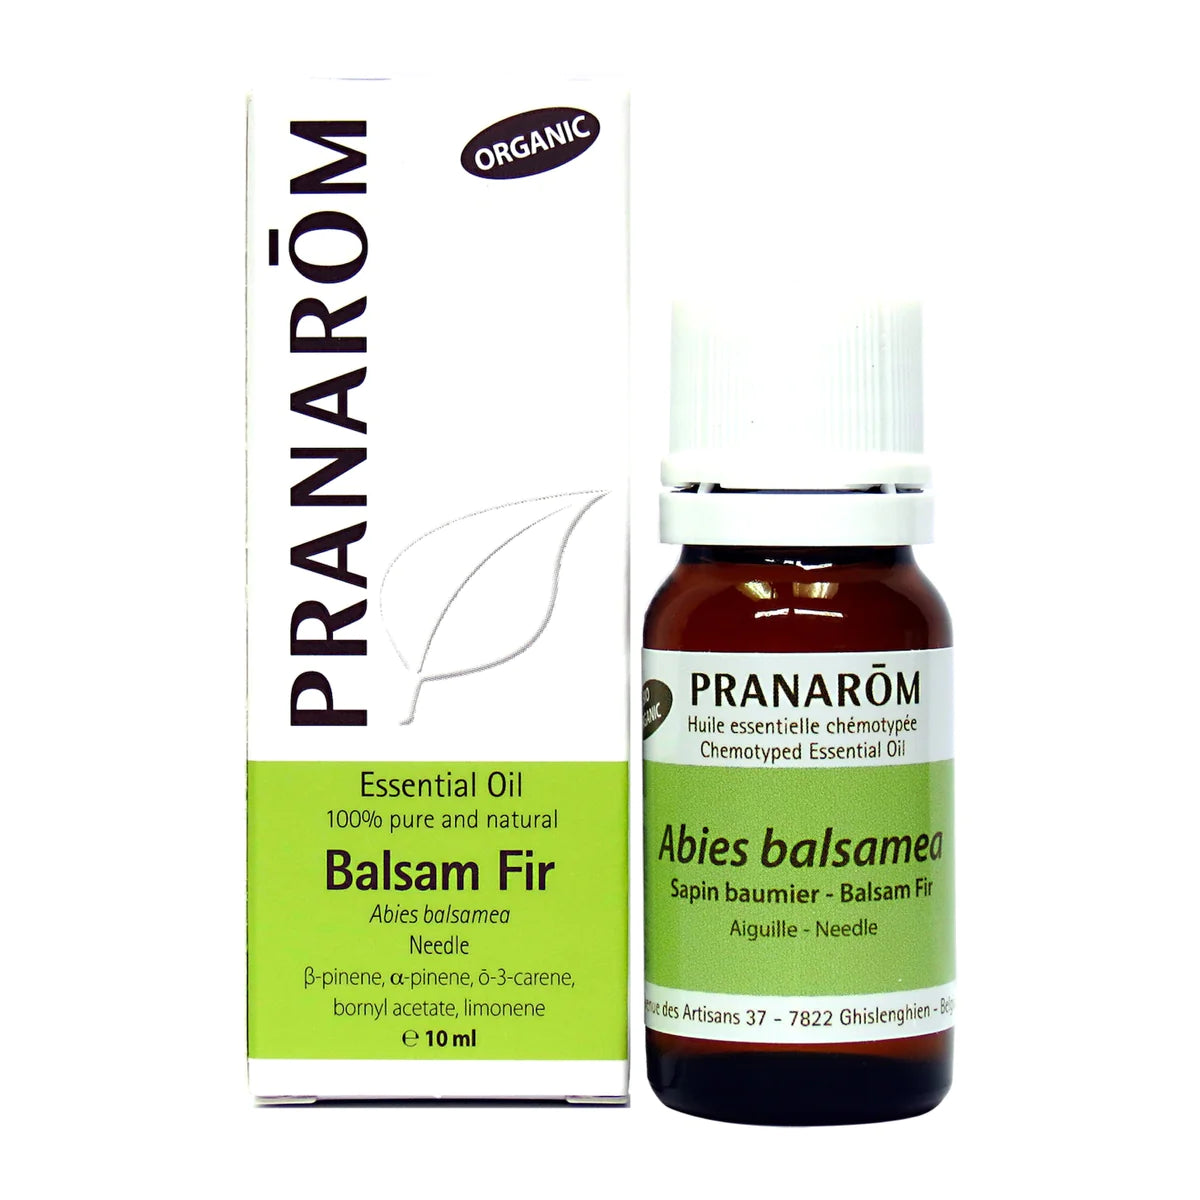 Balsam Fir, Abies balsamea – Needle, essential oil, Organic 10 ml